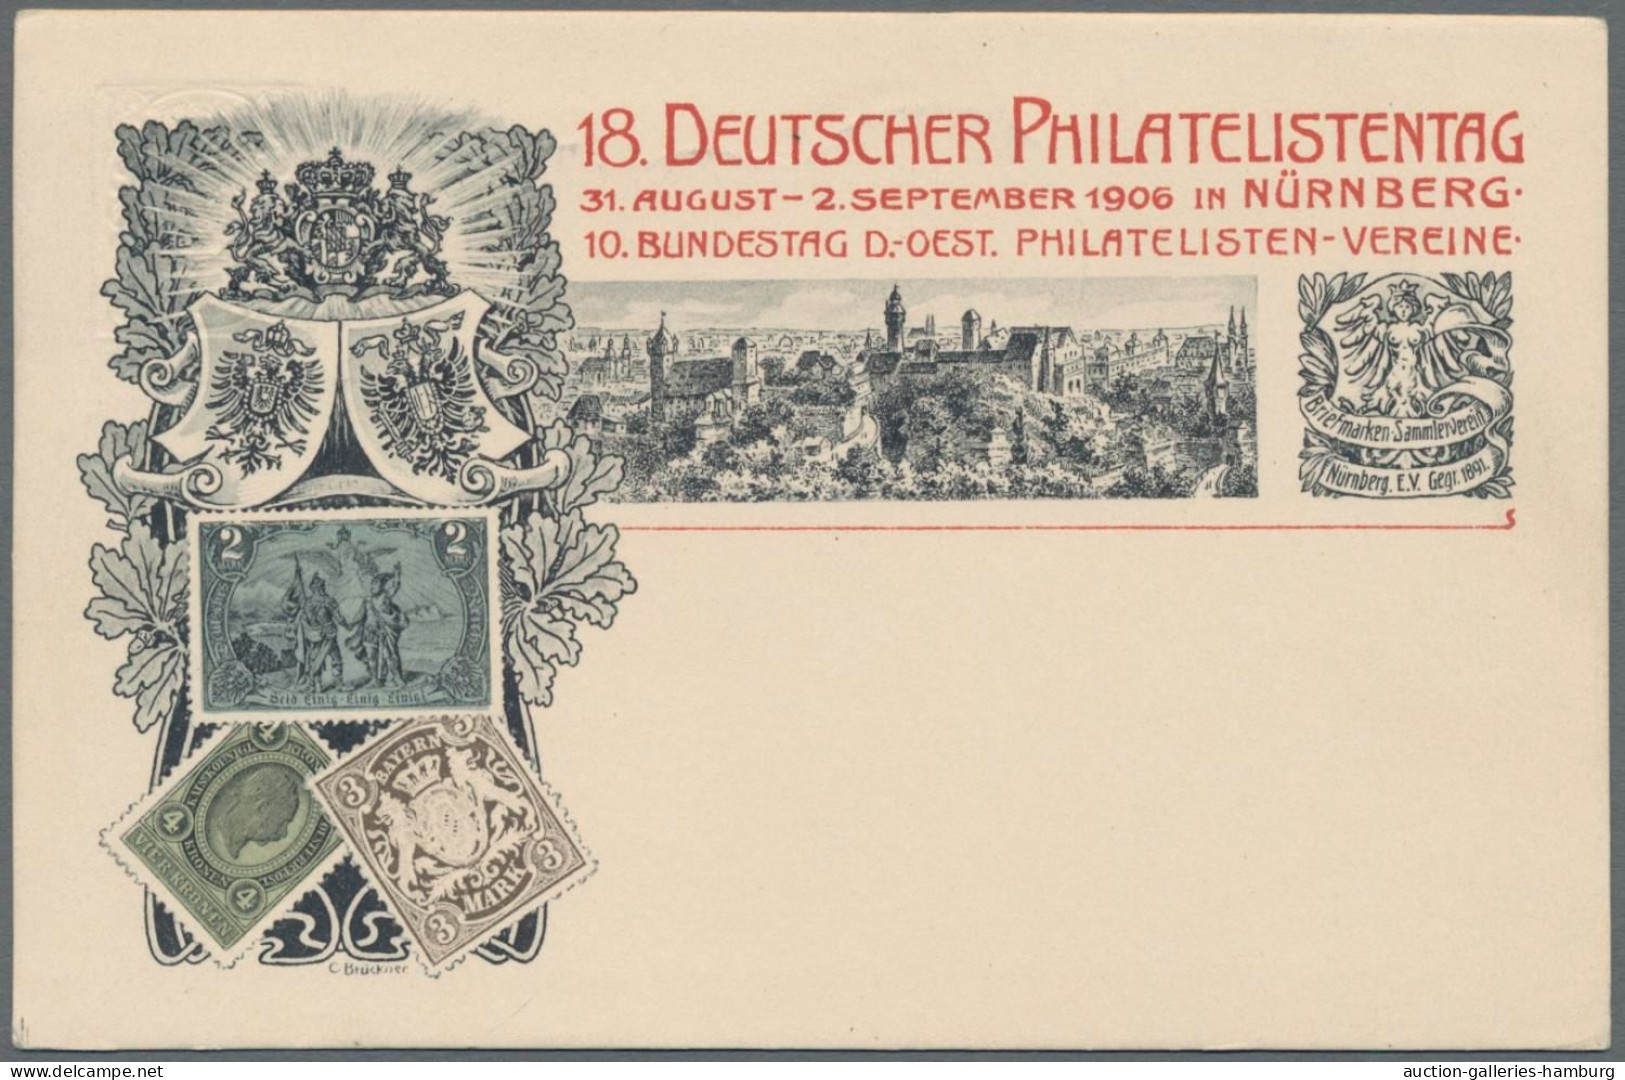 Bayern - Privatganzsachen: 1903-1913, Partie von 8 Privatganzsachen, davon sind